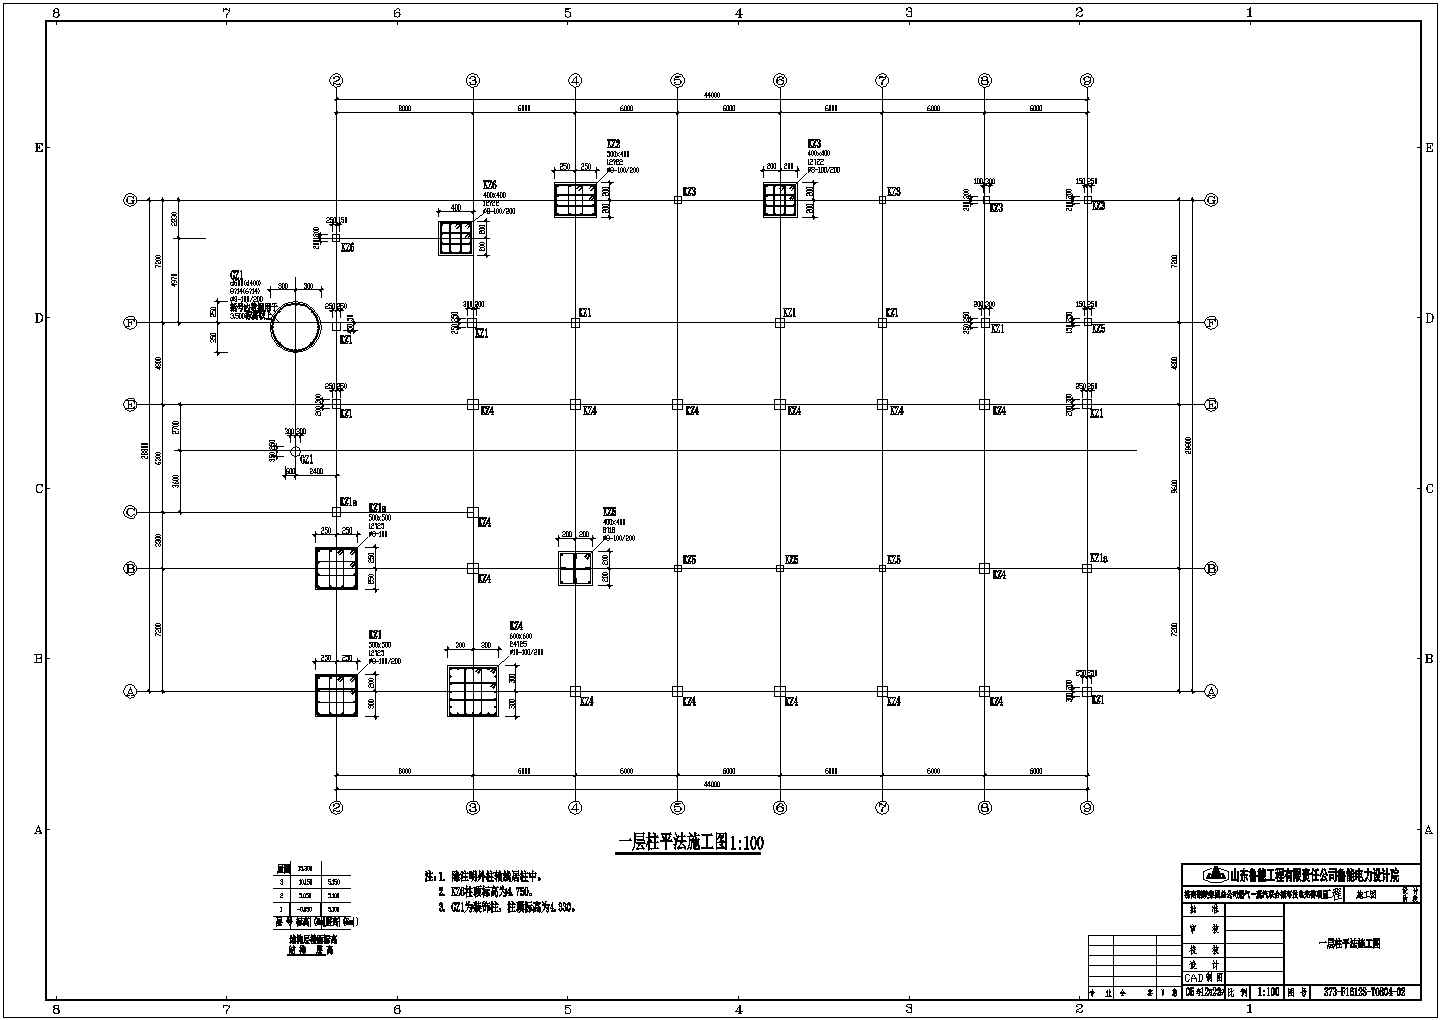 山东钢铁厂主控楼三层建筑框架结构施工设计cad平面方案图纸(柱下钢筋混凝土独立基础)